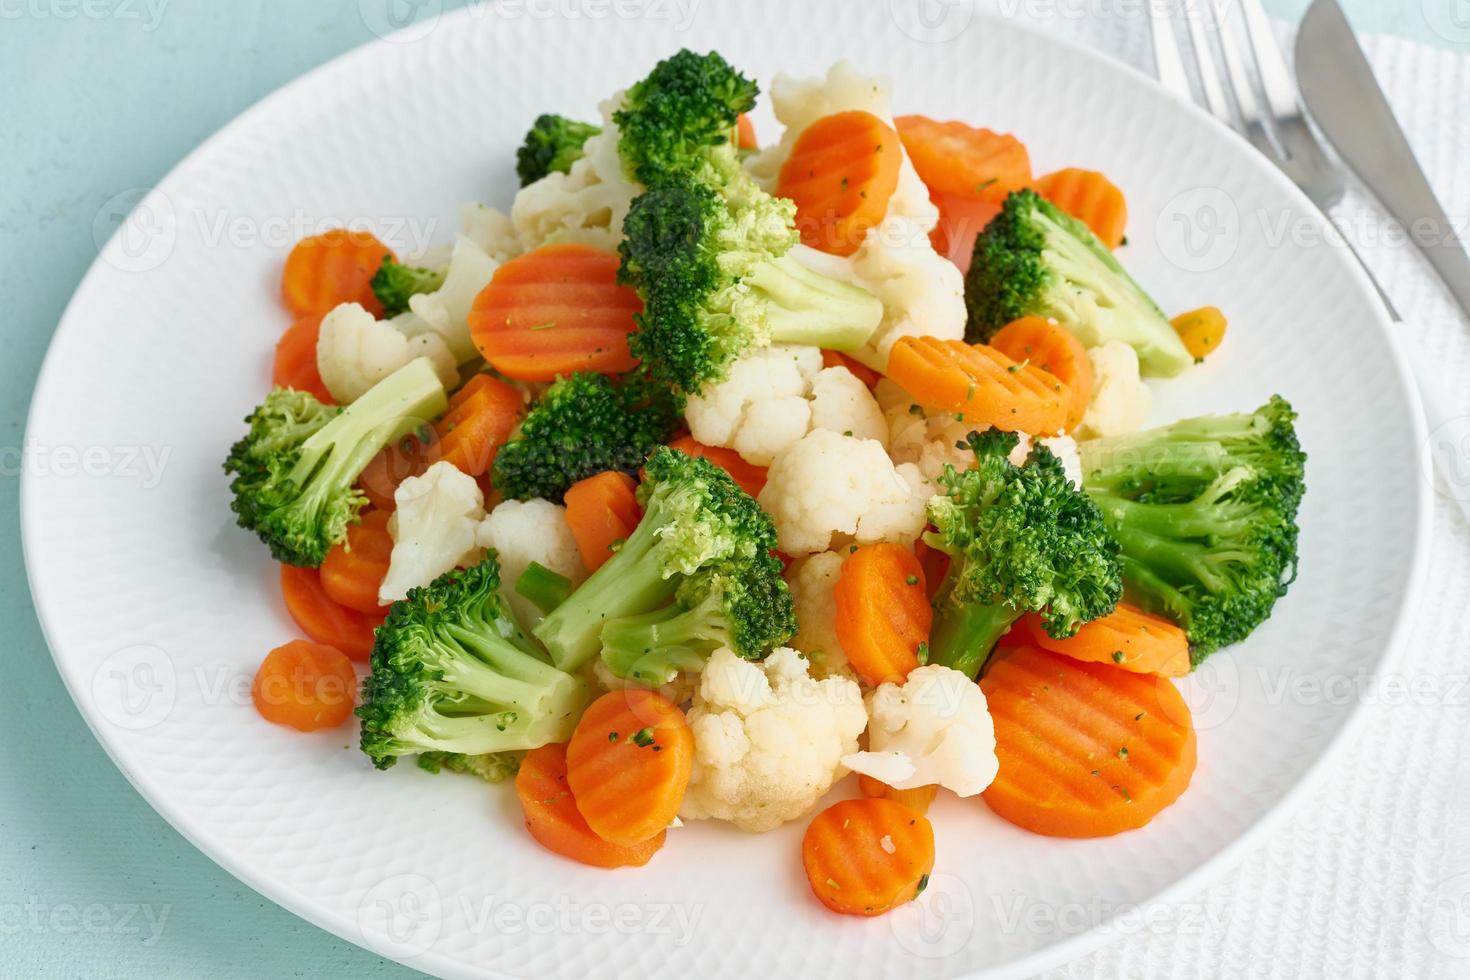 mistura de legumes cozidos. brócolis, cenoura, couve-flor. legumes cozidos no vapor para dieta foto